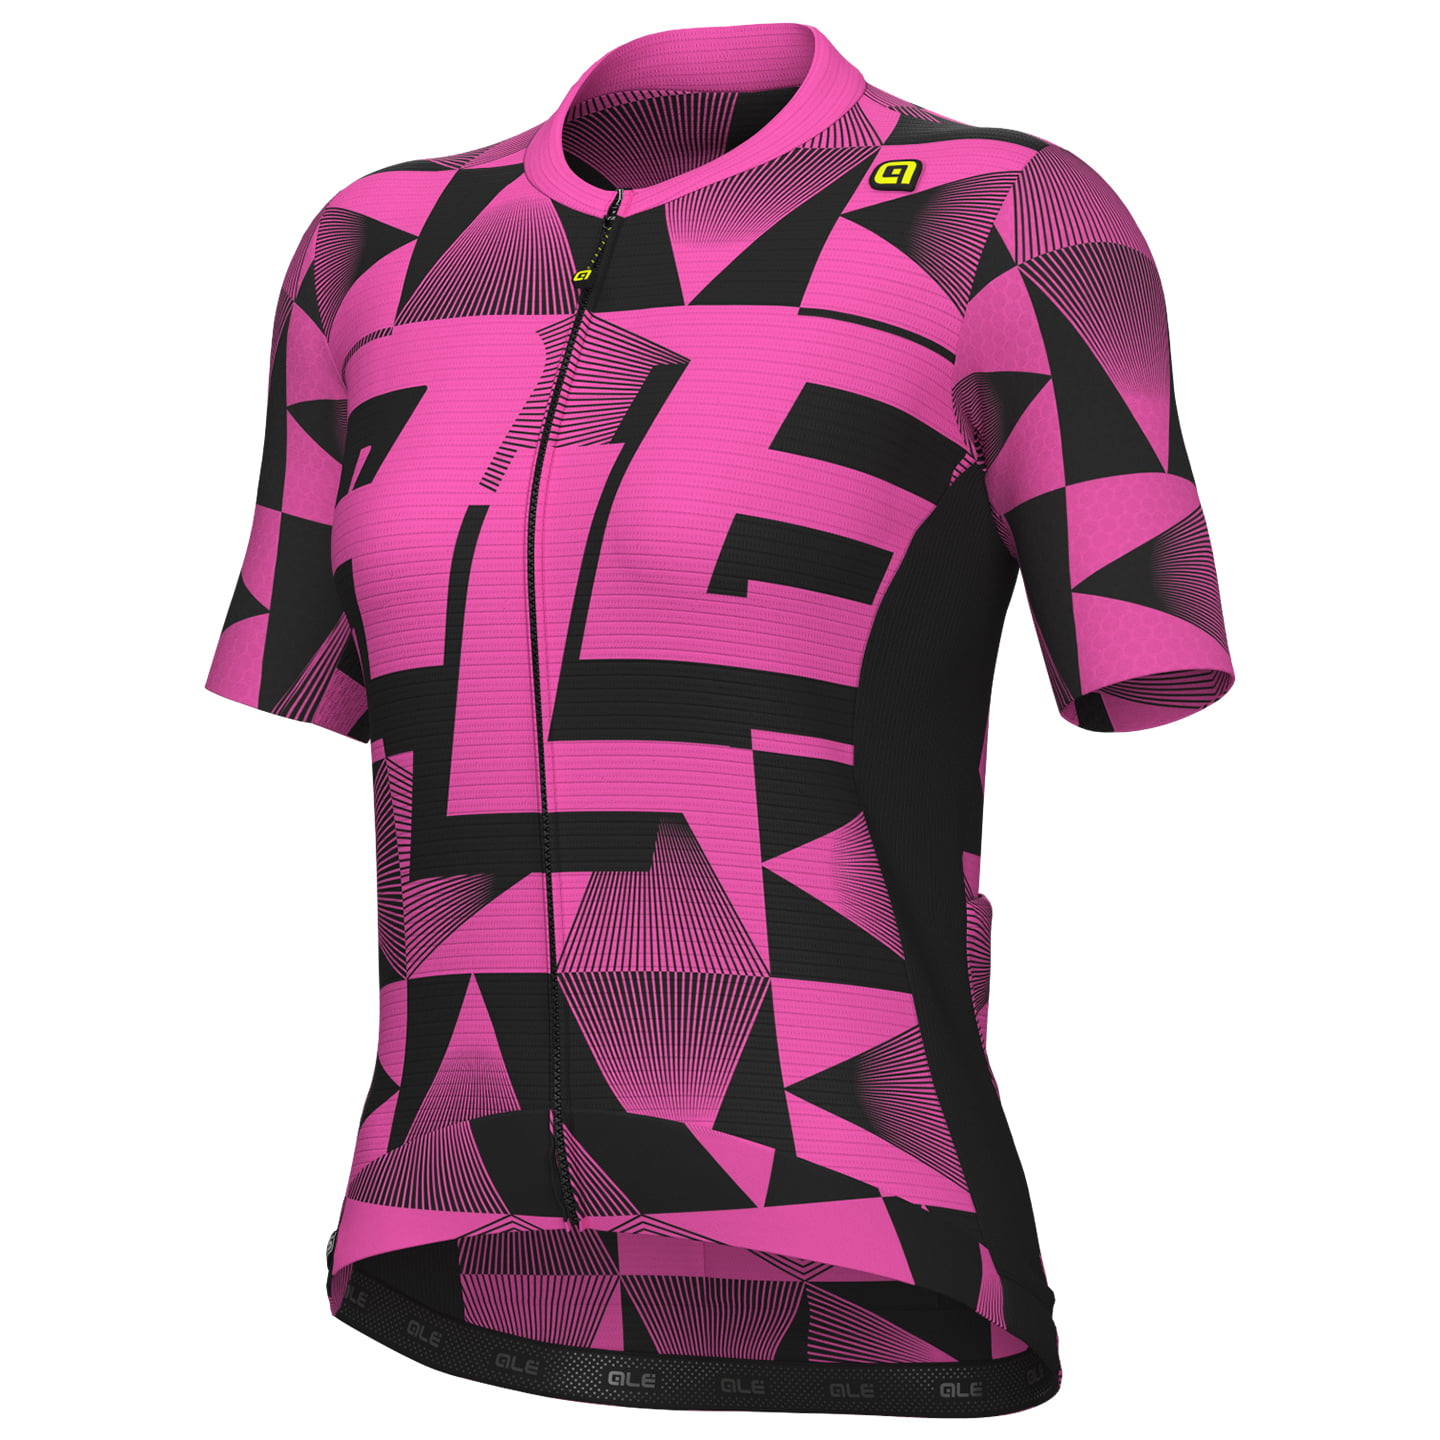 ALE Multiverso Women Short Sleeve Jersey Women’s Short Sleeve Jersey, size L, Cycling jersey, Cycling clothing